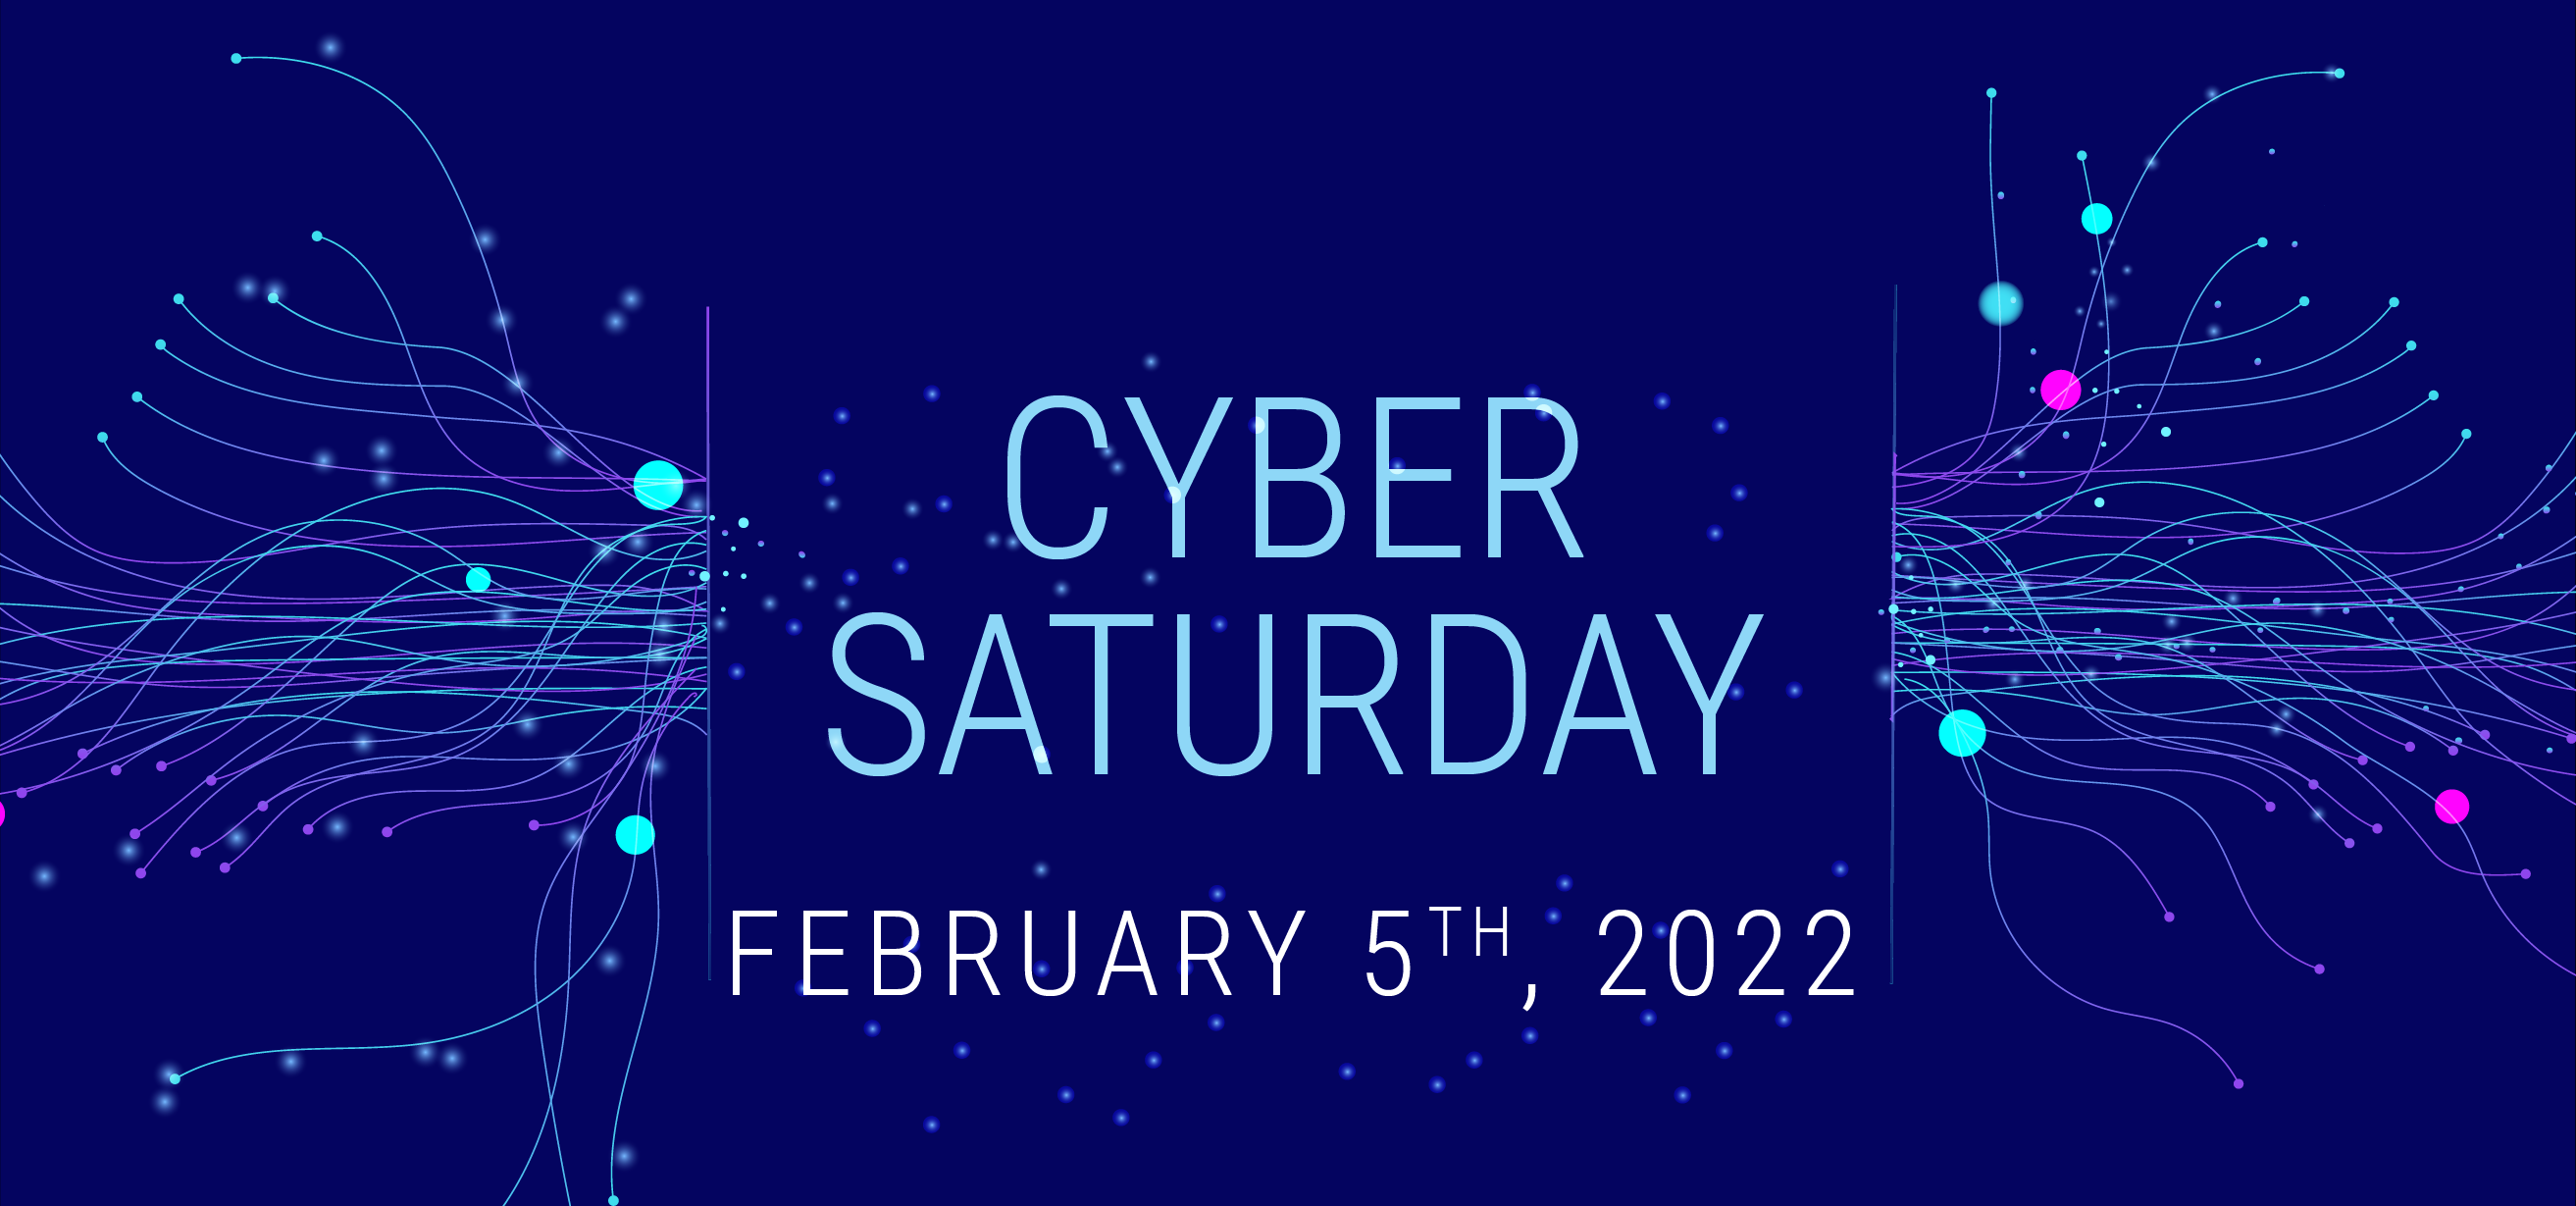 Cyber Saturday Feb 5 2022